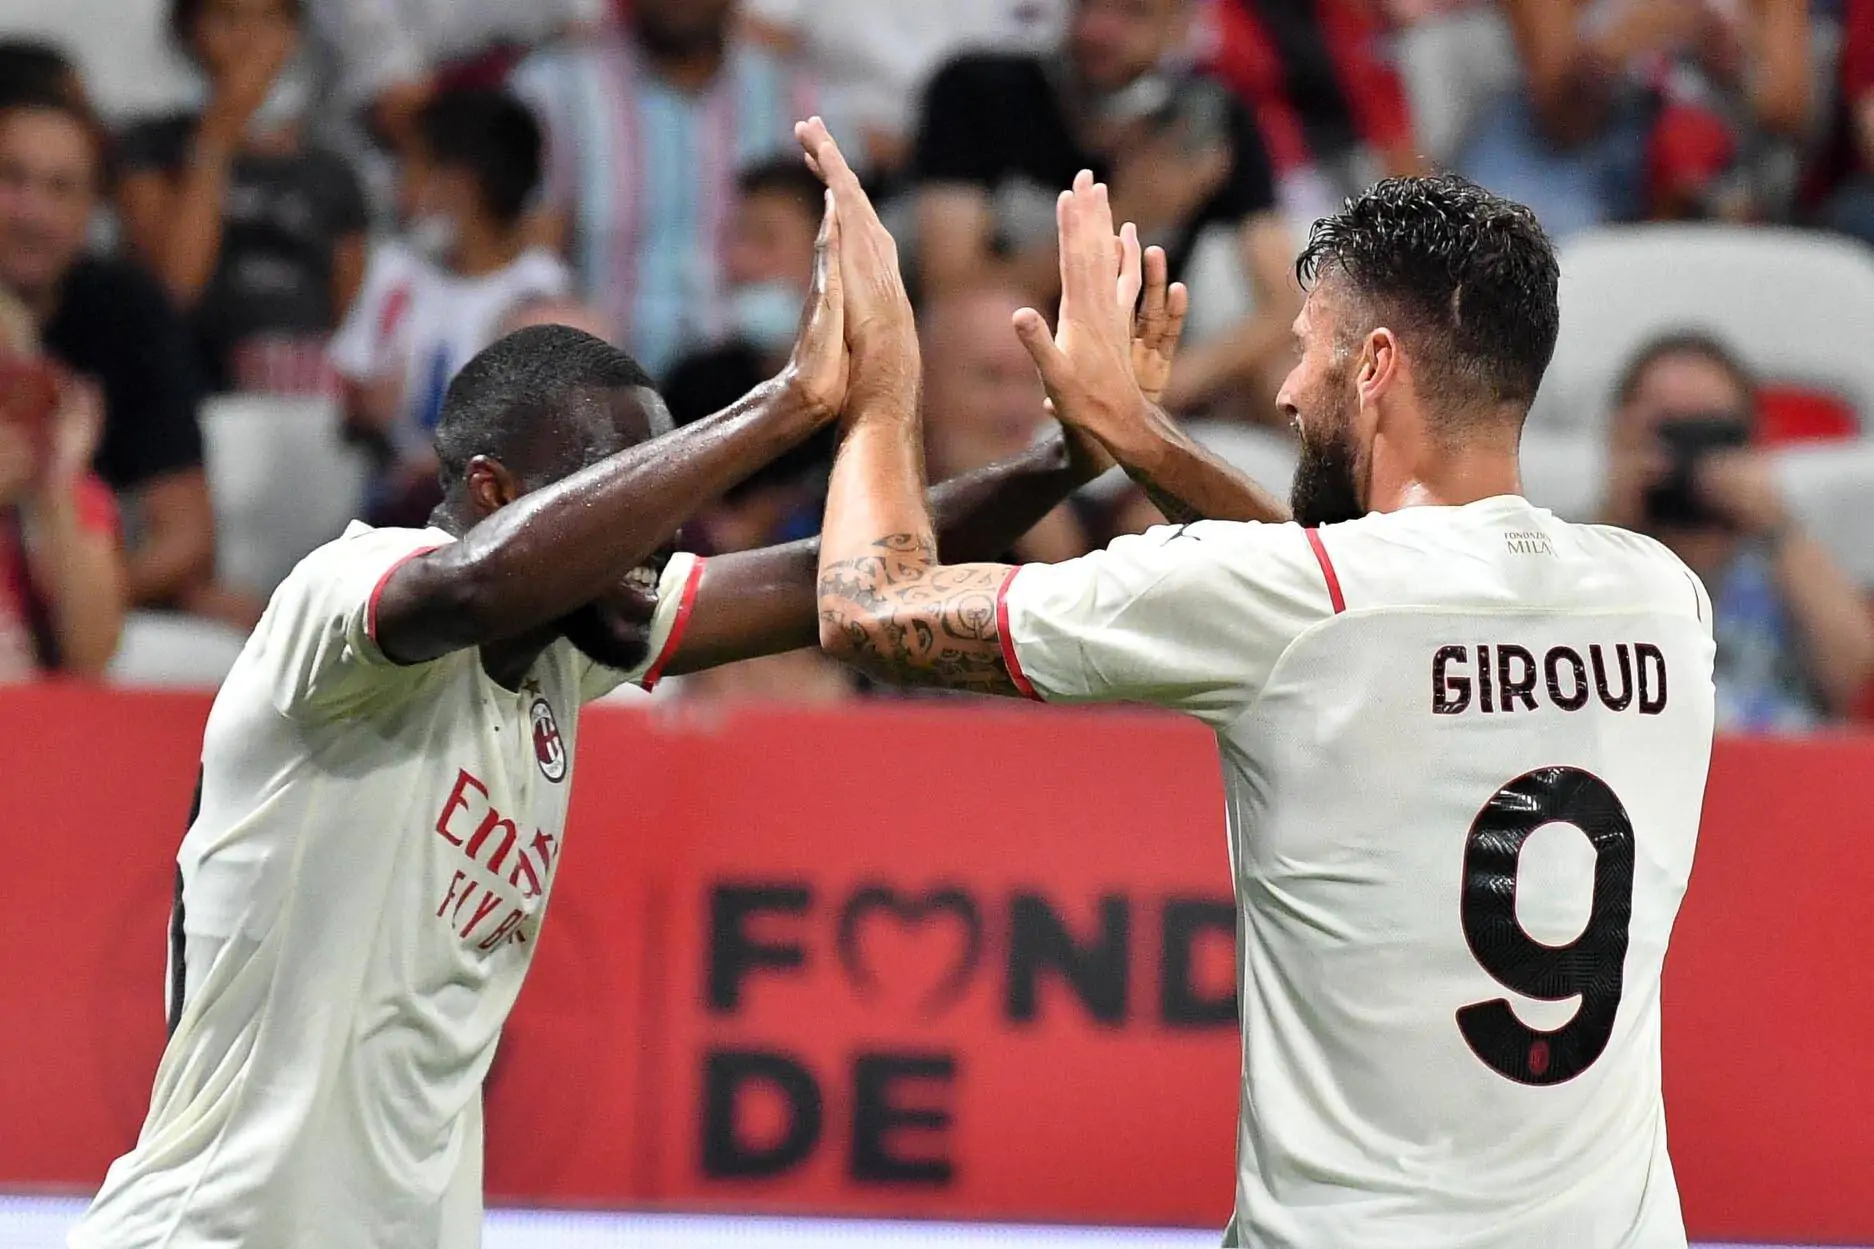 Le probabili formazioni di Valencia-Milan: Giroud titolare